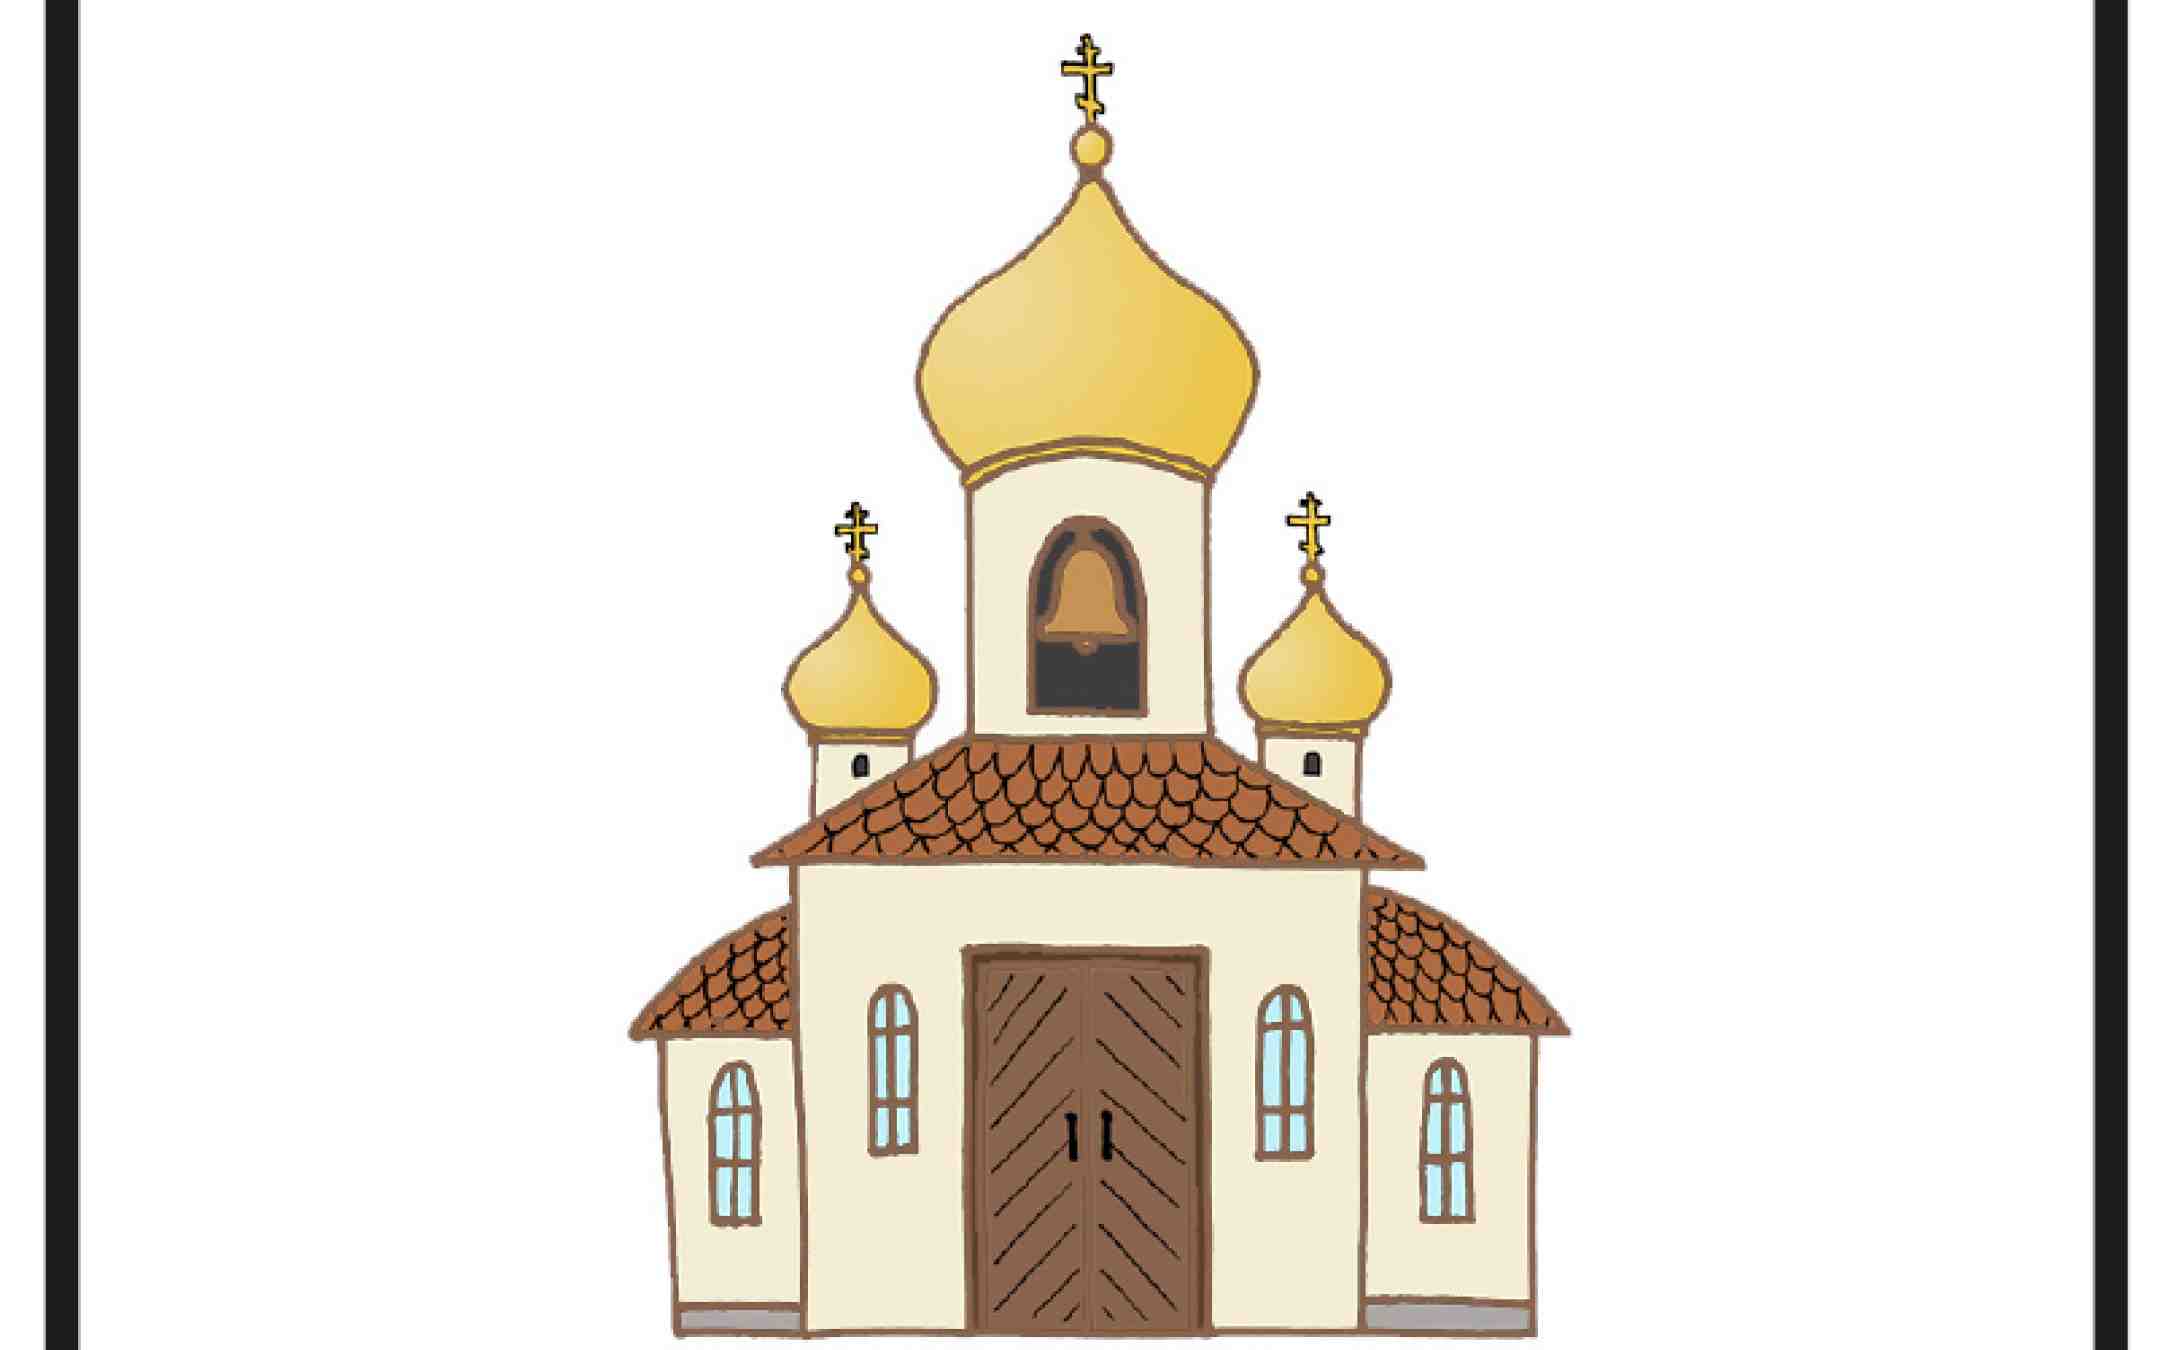 Suomi-ukraina kuvakorttiin piirroksena kuvattu ortodoksinen kirkko